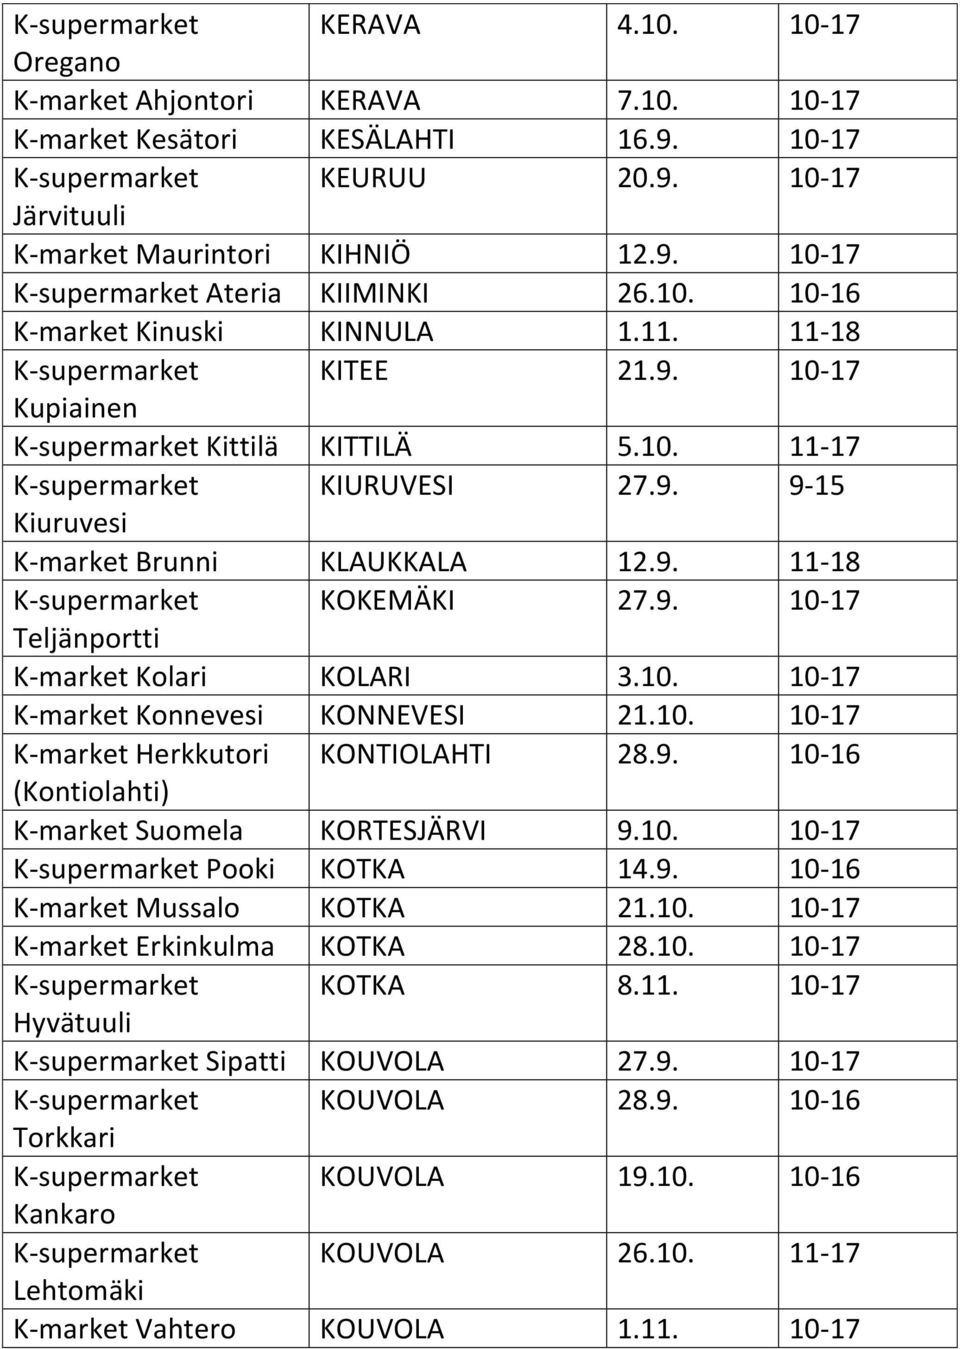 9. 11-18 K-supermarket KOKEMÄKI 27.9. 10-17 Teljänportti K-market Kolari KOLARI 3.10. 10-17 K-market Konnevesi KONNEVESI 21.10. 10-17 K-market Herkkutori KONTIOLAHTI 28.9. 10-16 (Kontiolahti) K-market Suomela KORTESJÄRVI 9.